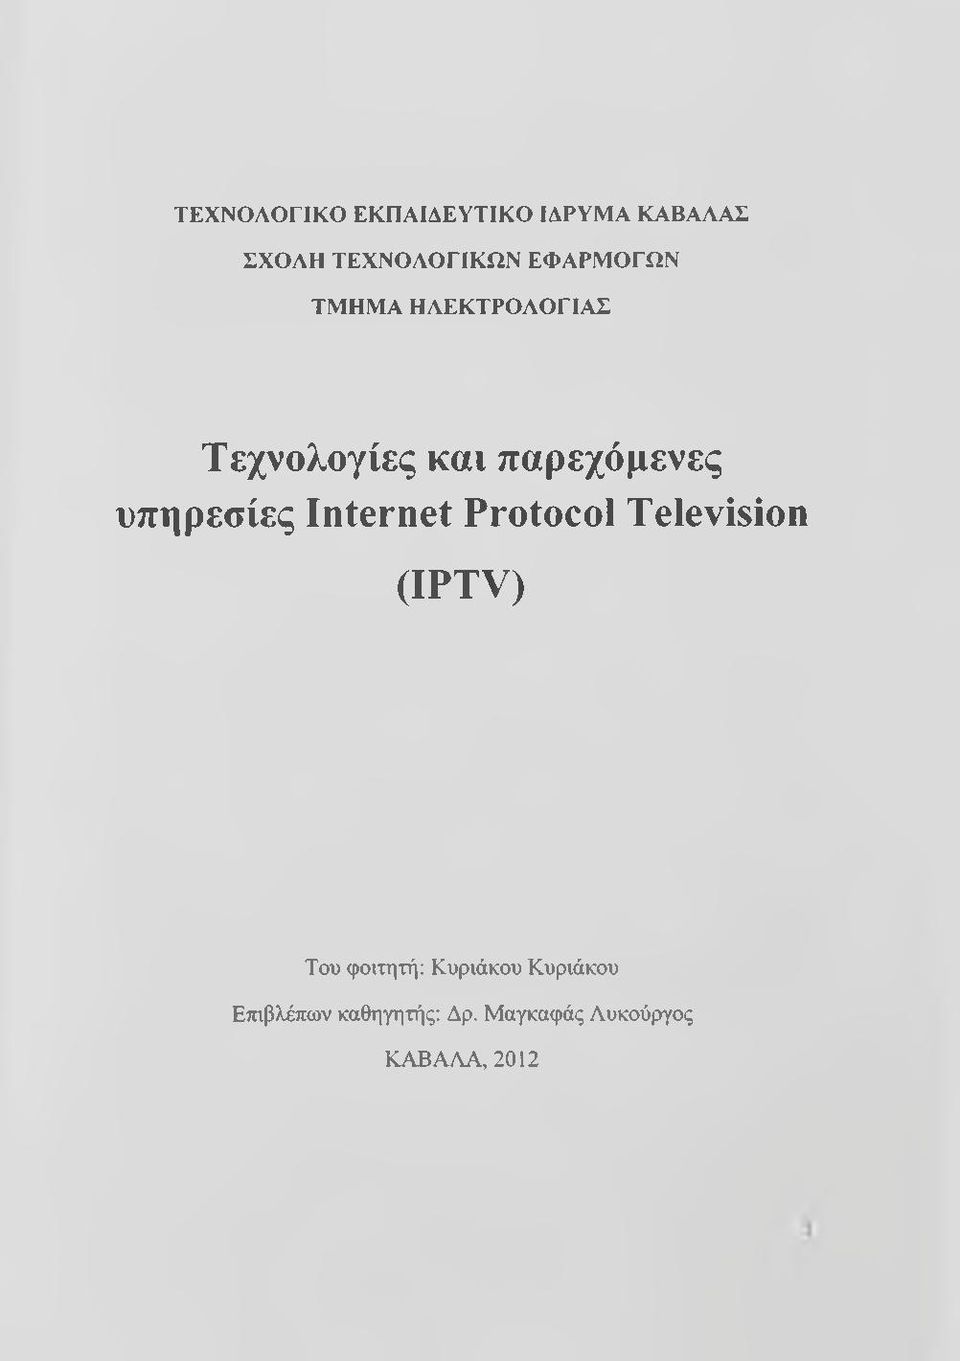 υπηρεσίες Internet Protocol Television (IPTV) Του φοιτητή: